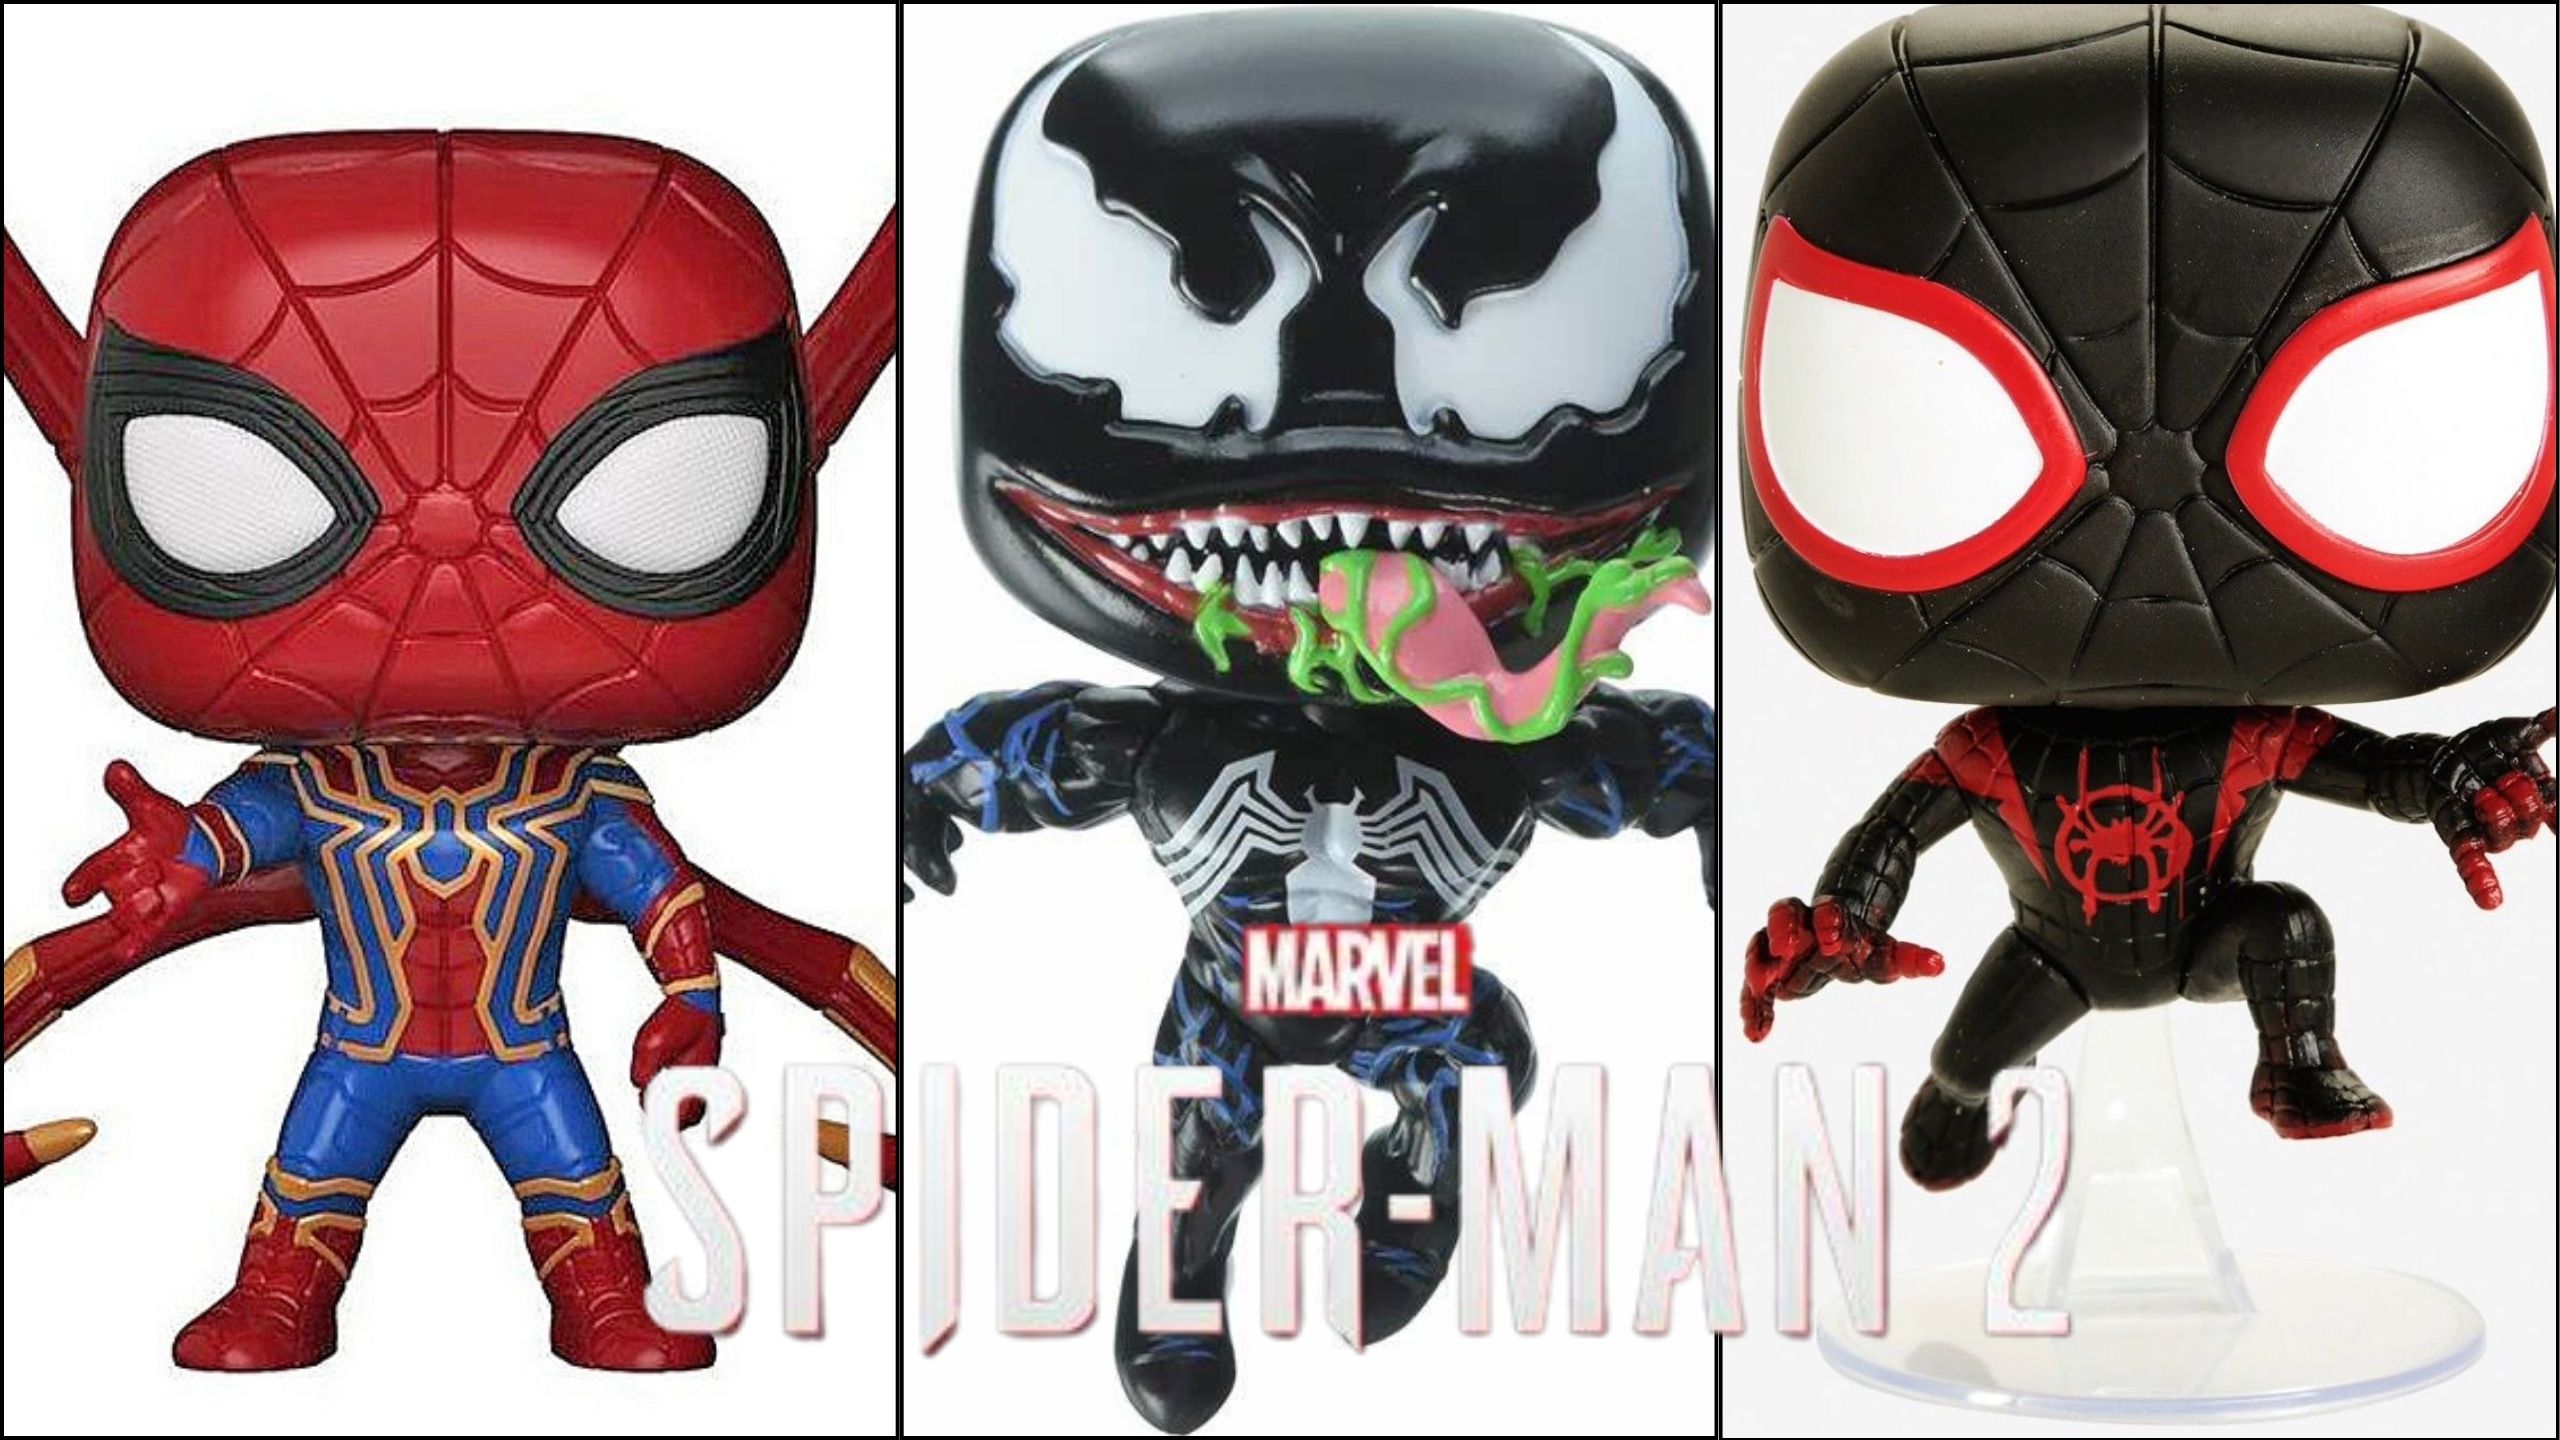 Exciting Leak: Marvel's Spider-Man 2 Funko Pops Revealed!